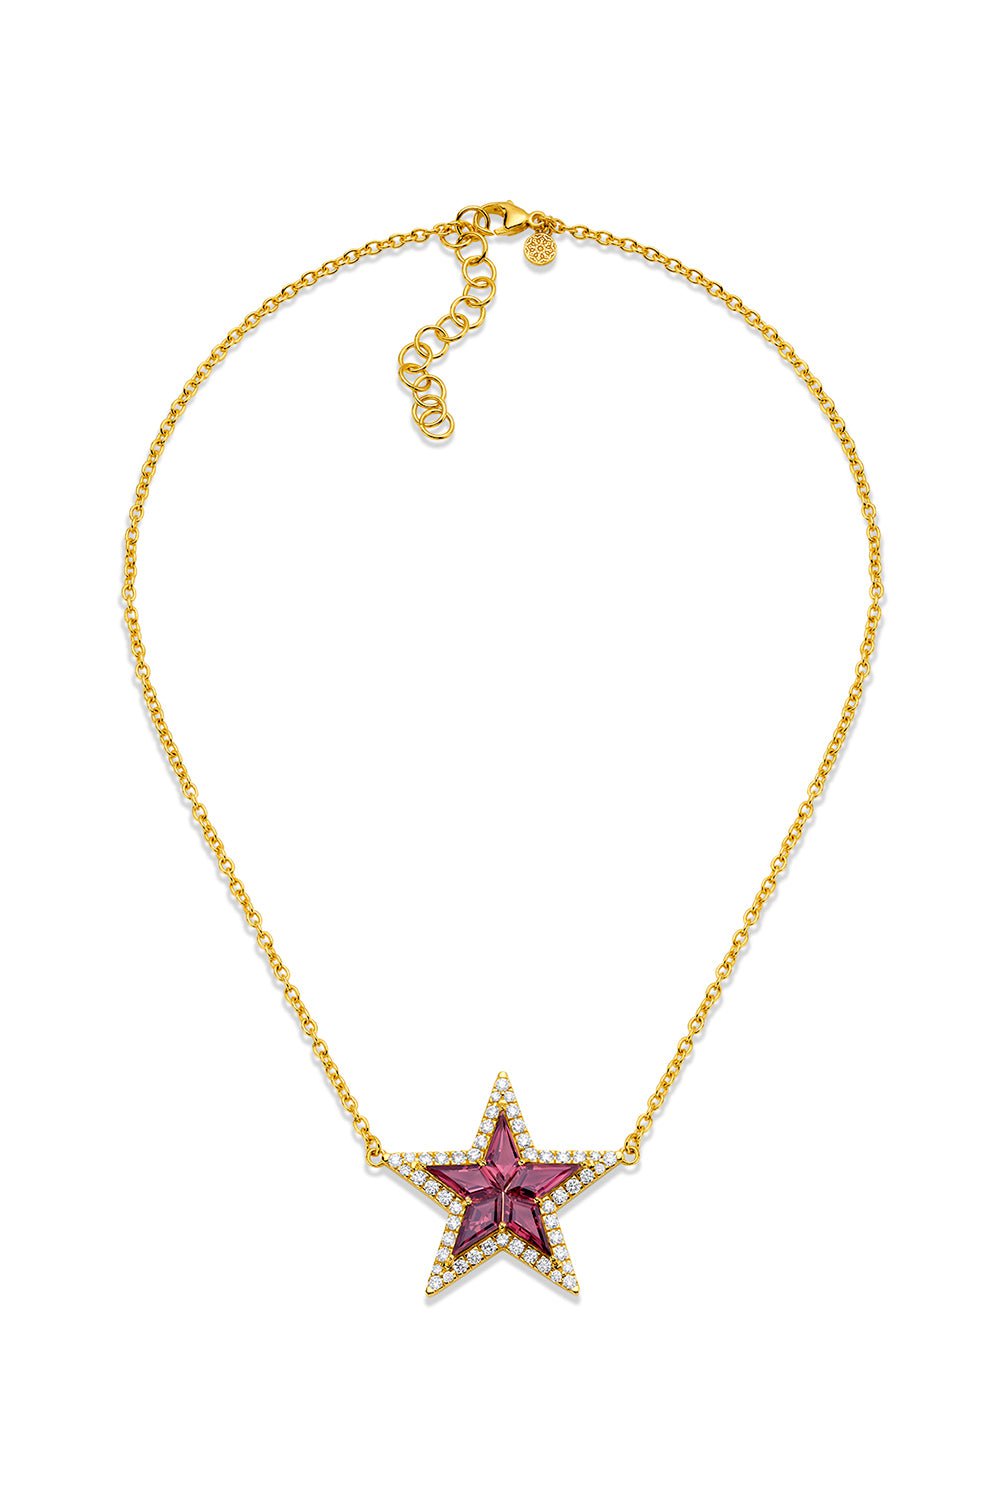 BUDDHA MAMA-Pink Tourmaline Kite Star Necklace-YELLOW GOLD